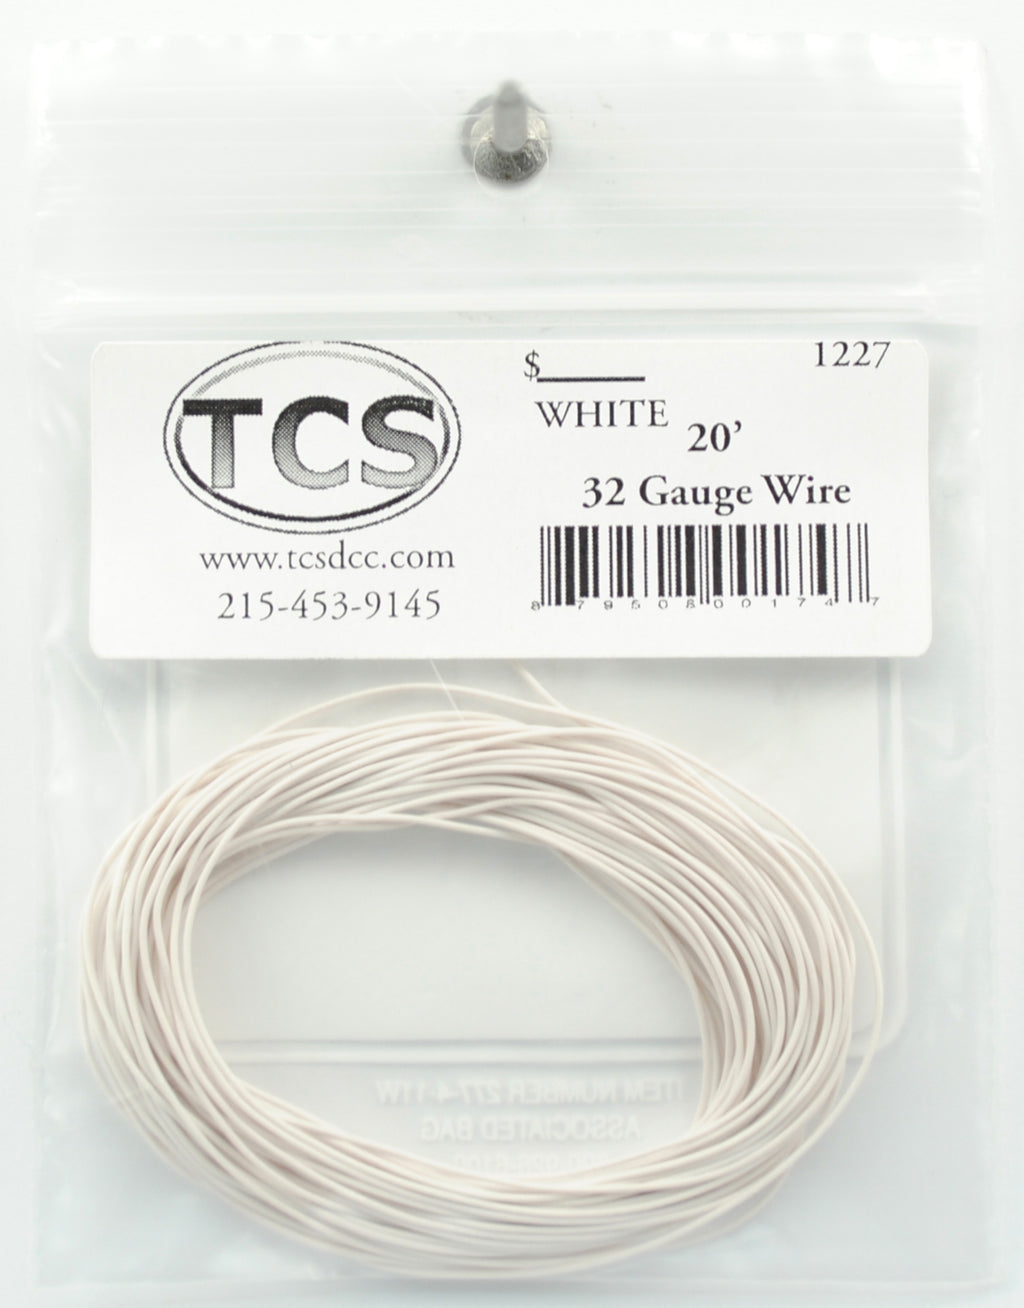 20' 30 Gauge Wire White